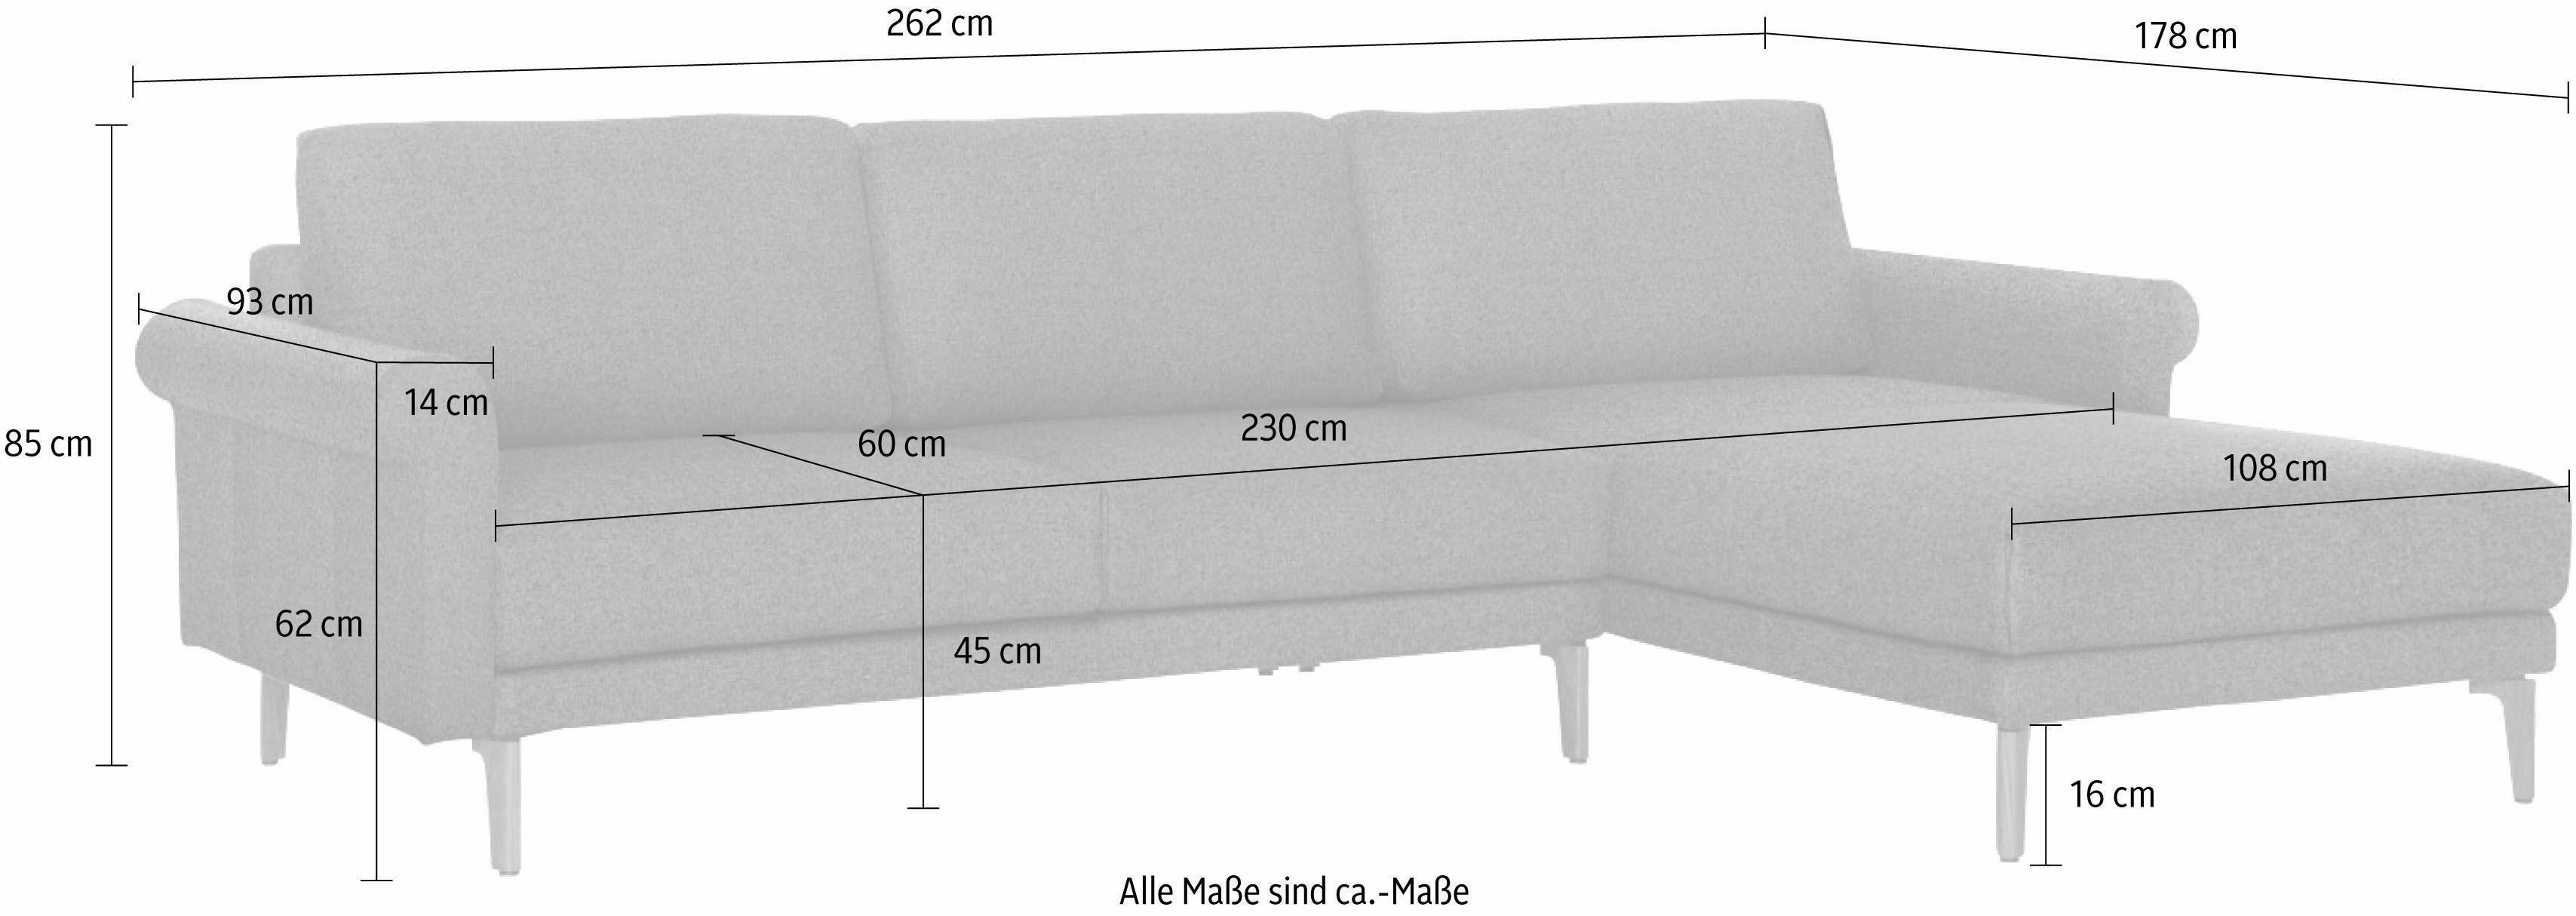 Armlehne sofa Ecksofa modern Nussbaum Landhaus, Breite 262 cm, Fuß Schnecke hs.450, hülsta